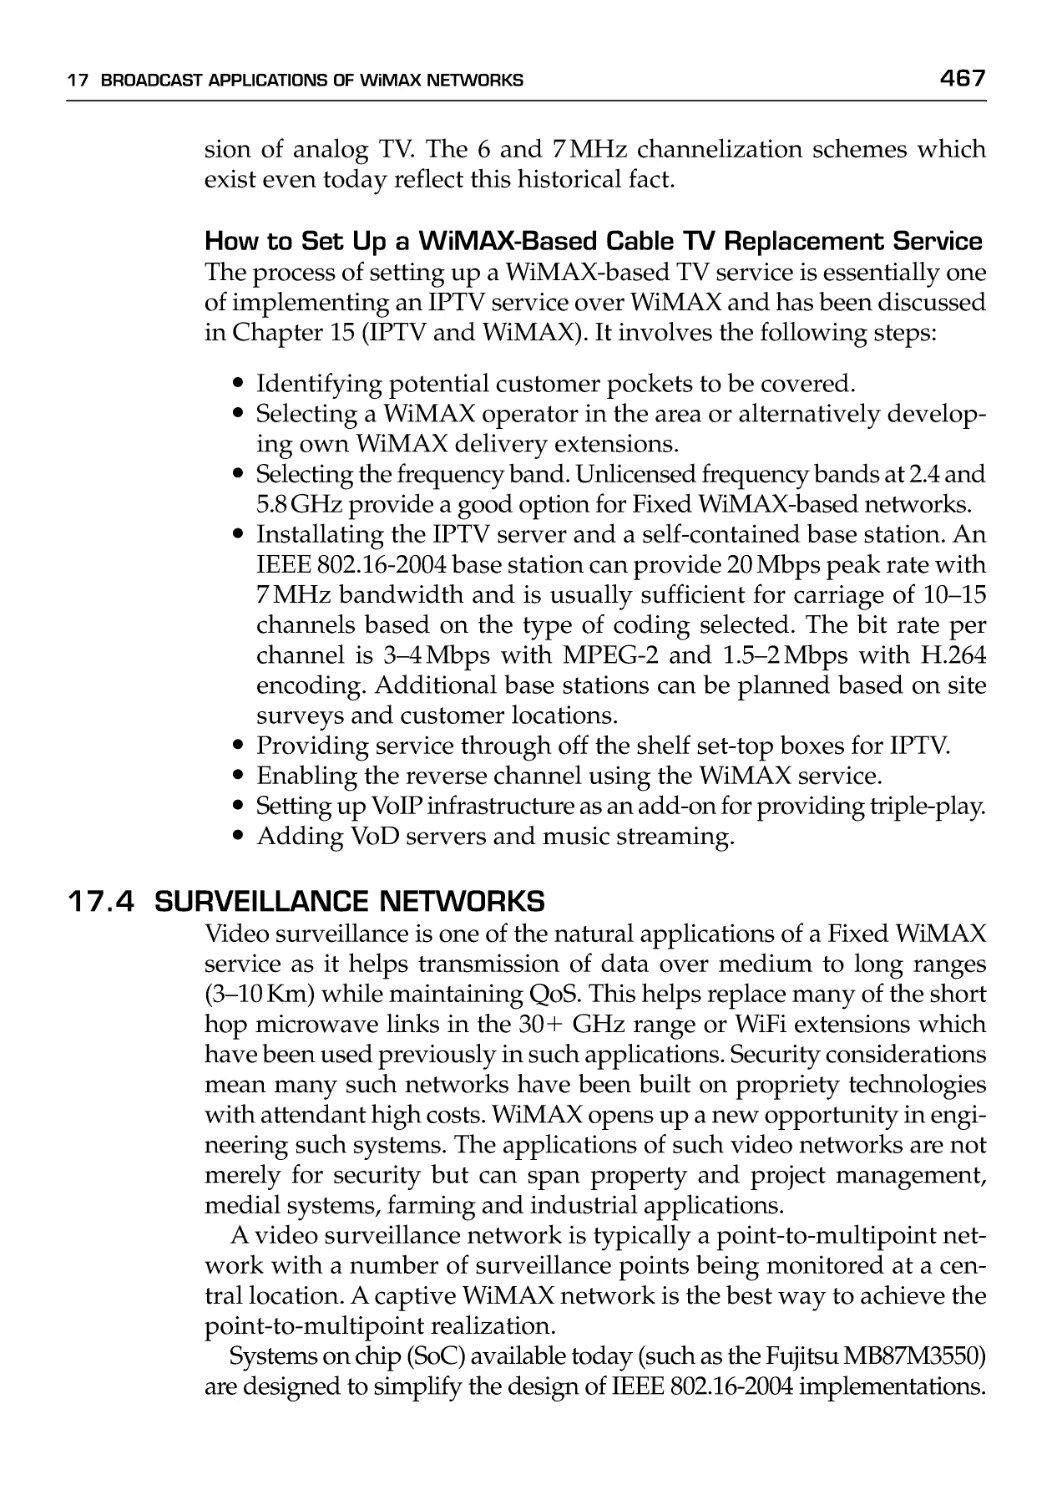 17.4 Surveillance Networks